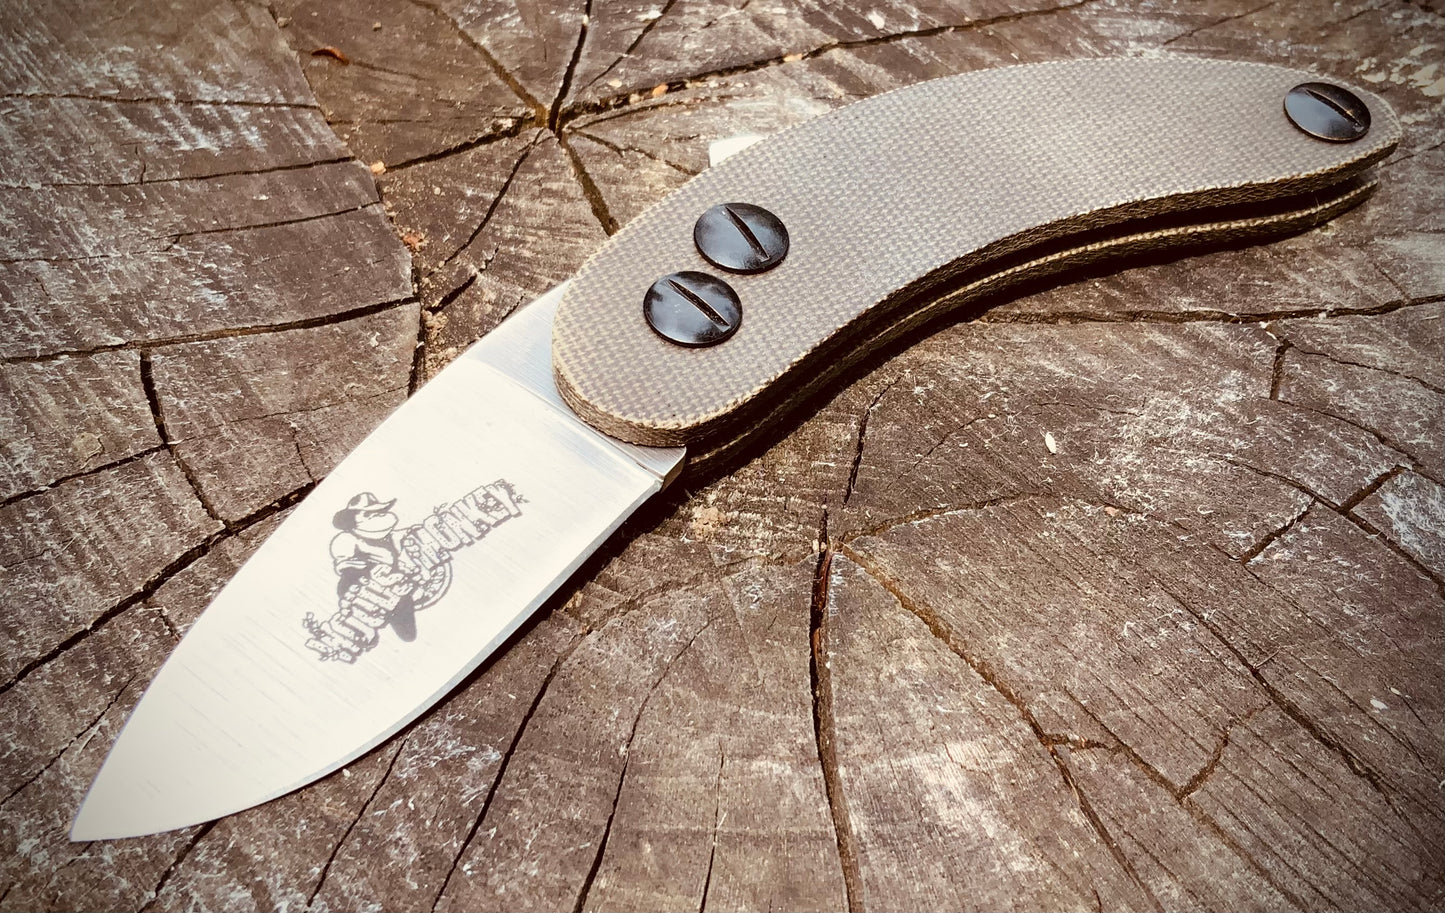 Banana Peel friction folding knife from Woods Monkey